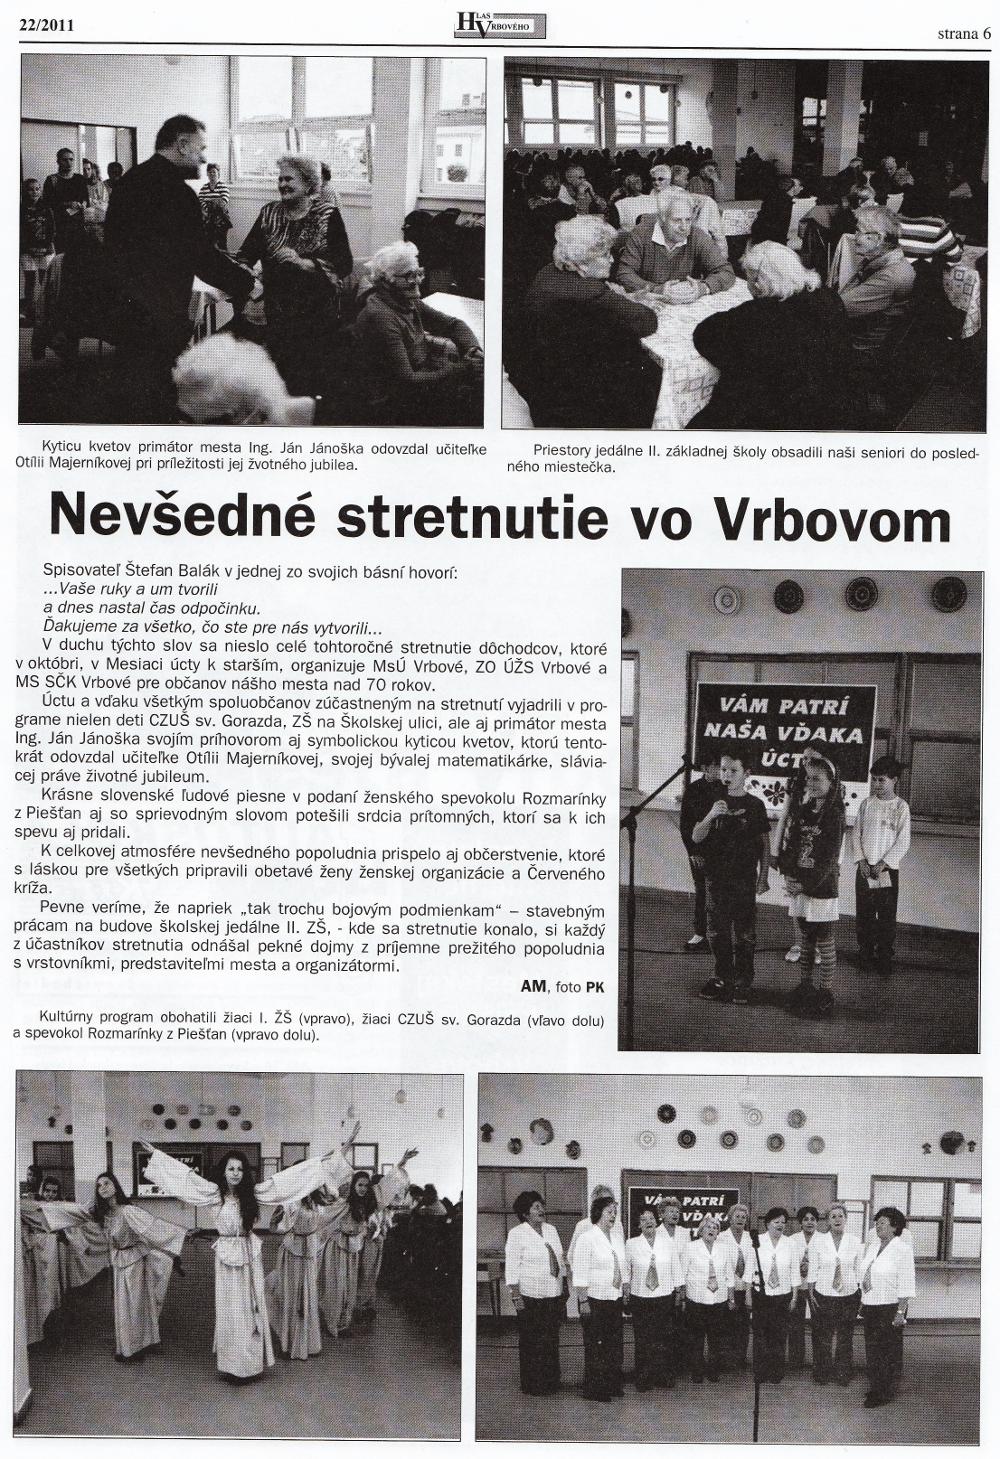 Hlas Vrbového 22/2011, strana 6